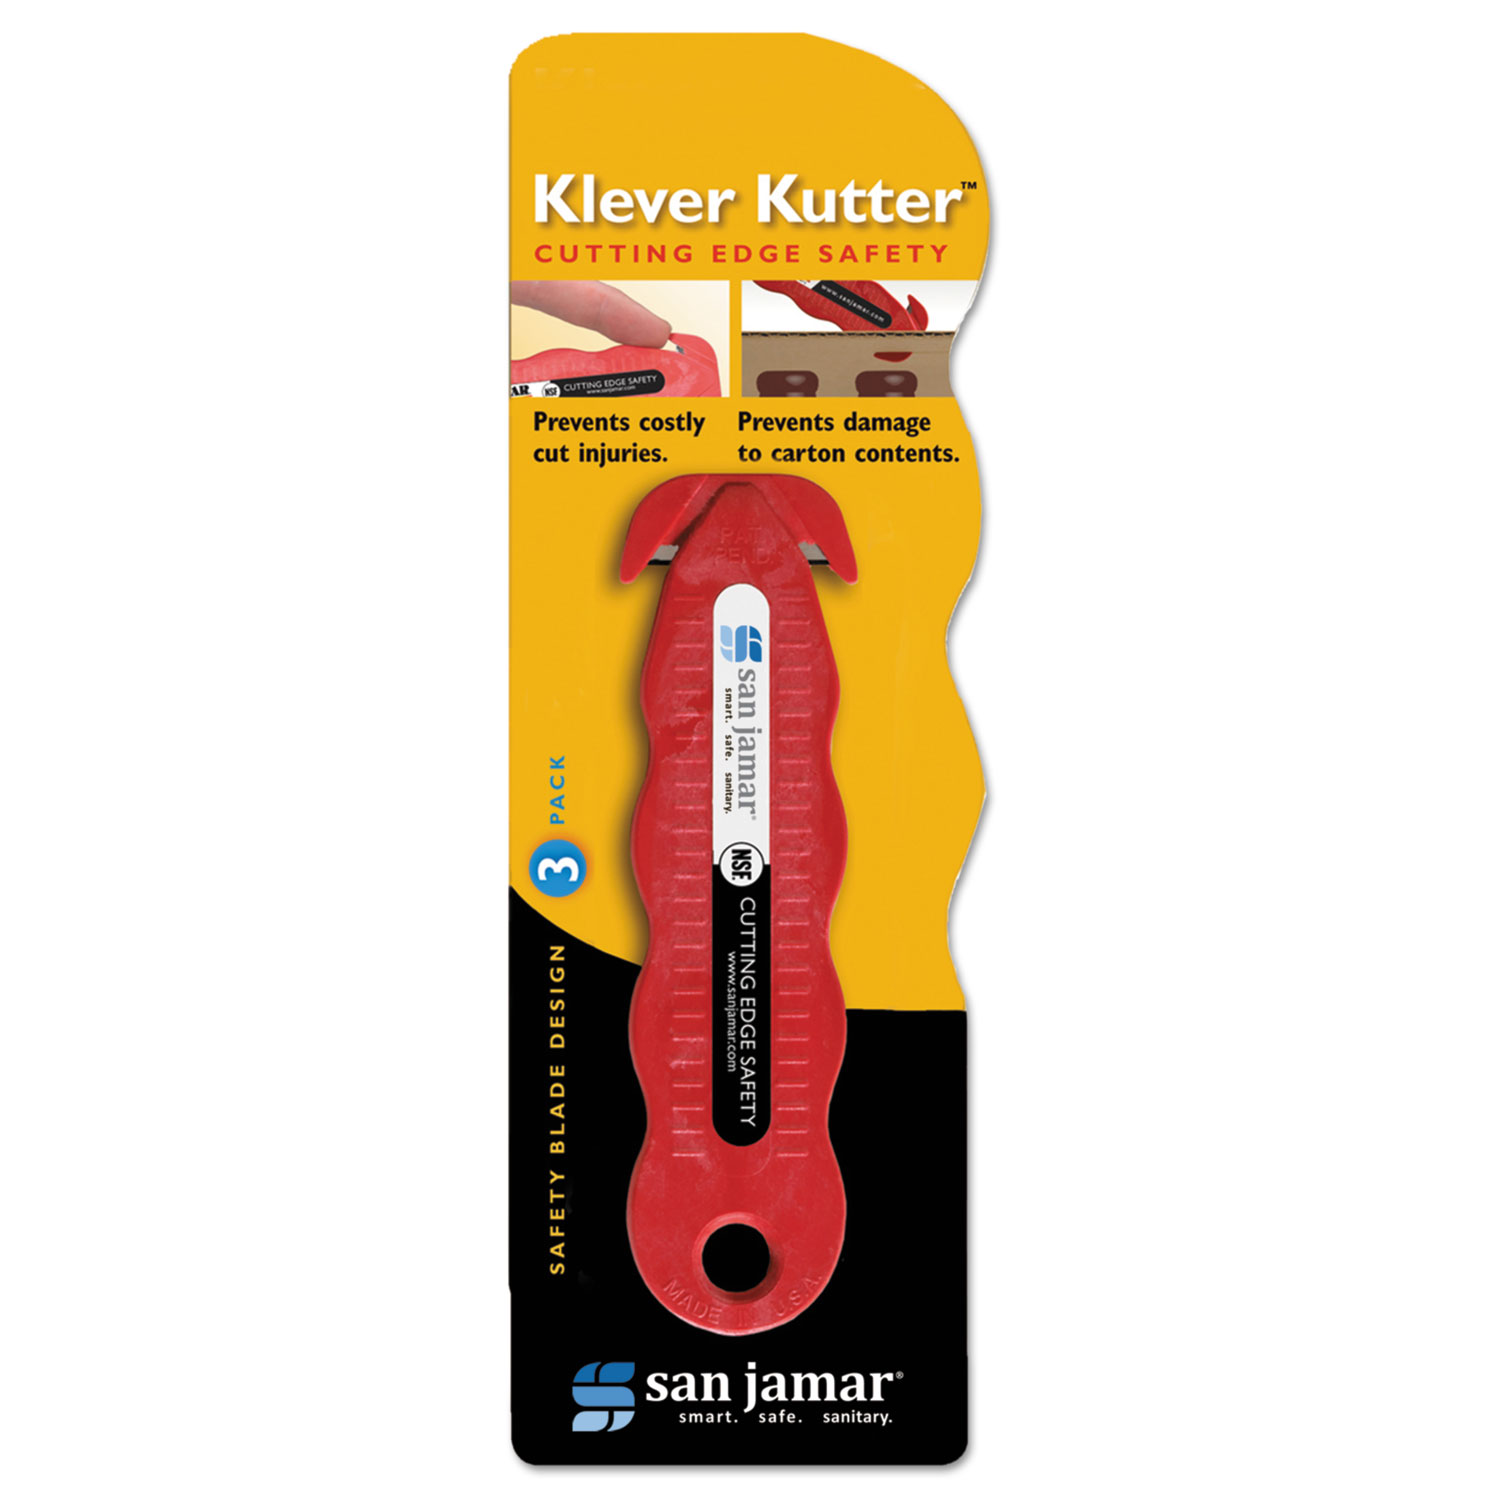  San Jamar SAN KK403 Klever Kutter Safety Cutter, 3 Razor Blades, Red (SJMKK403) 